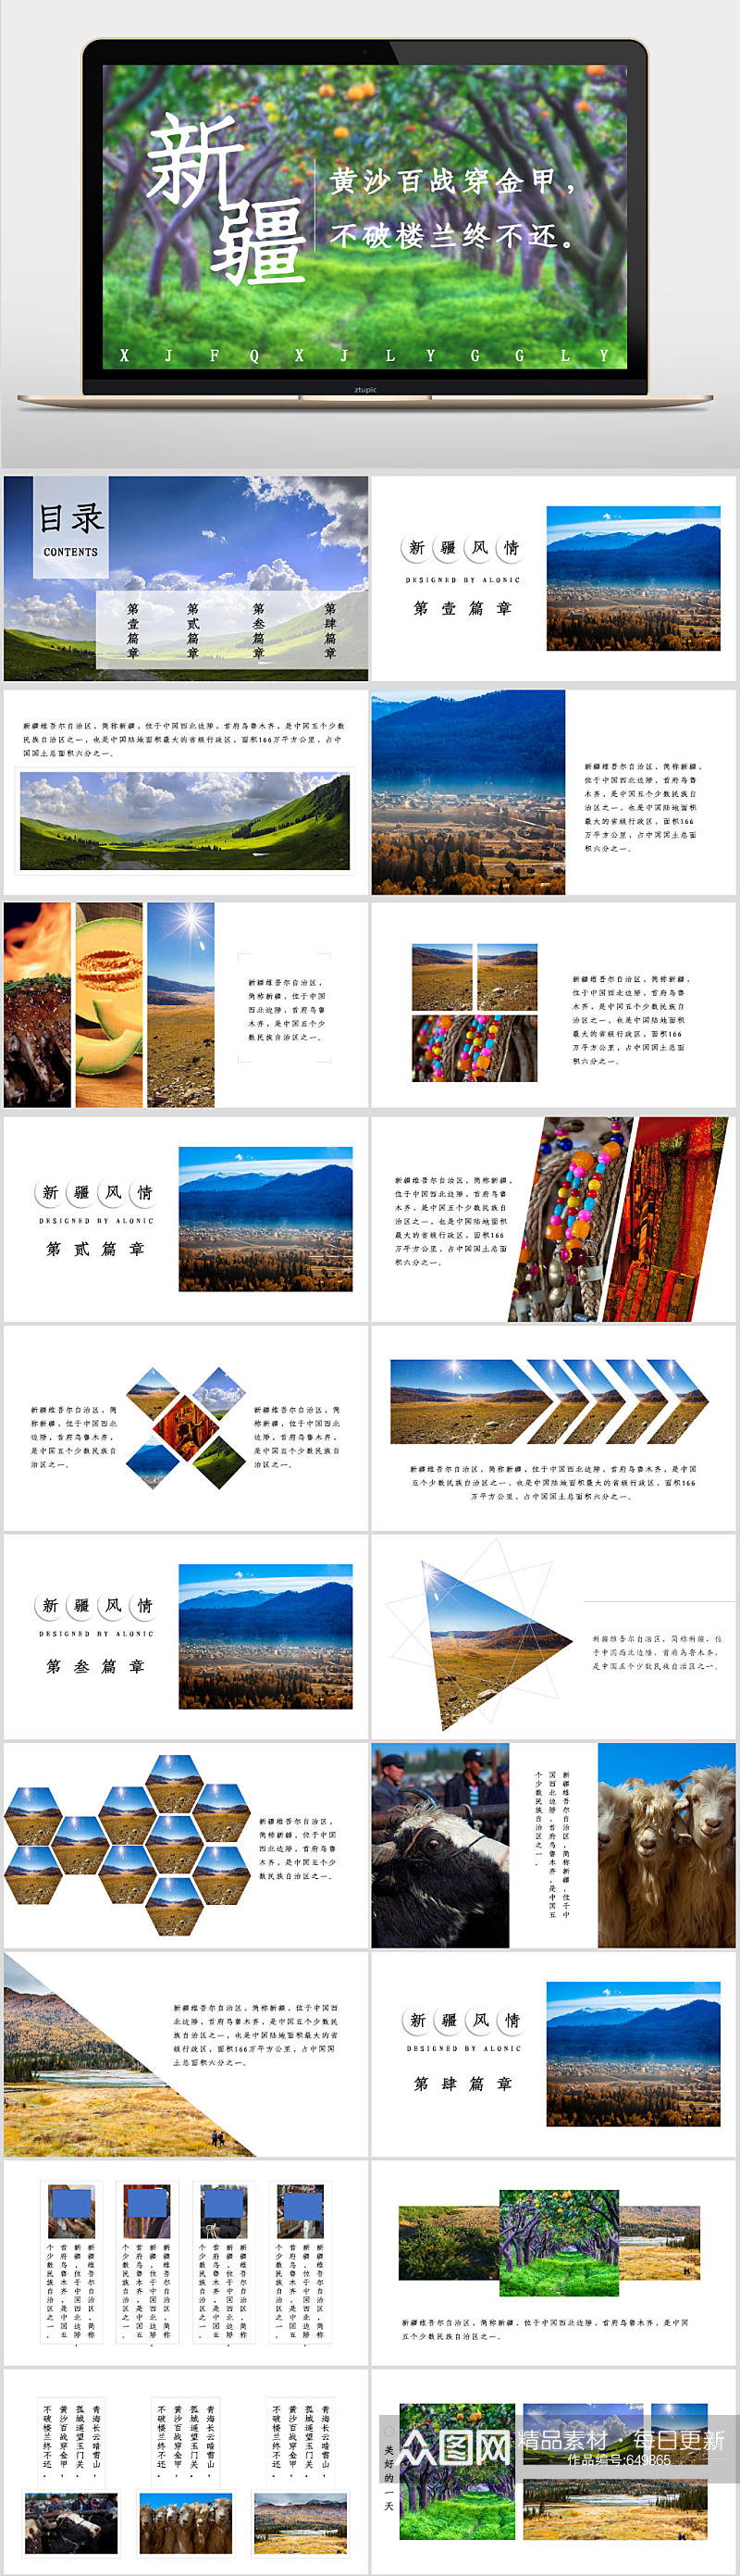 新疆风情旅行旅游PPT模板素材